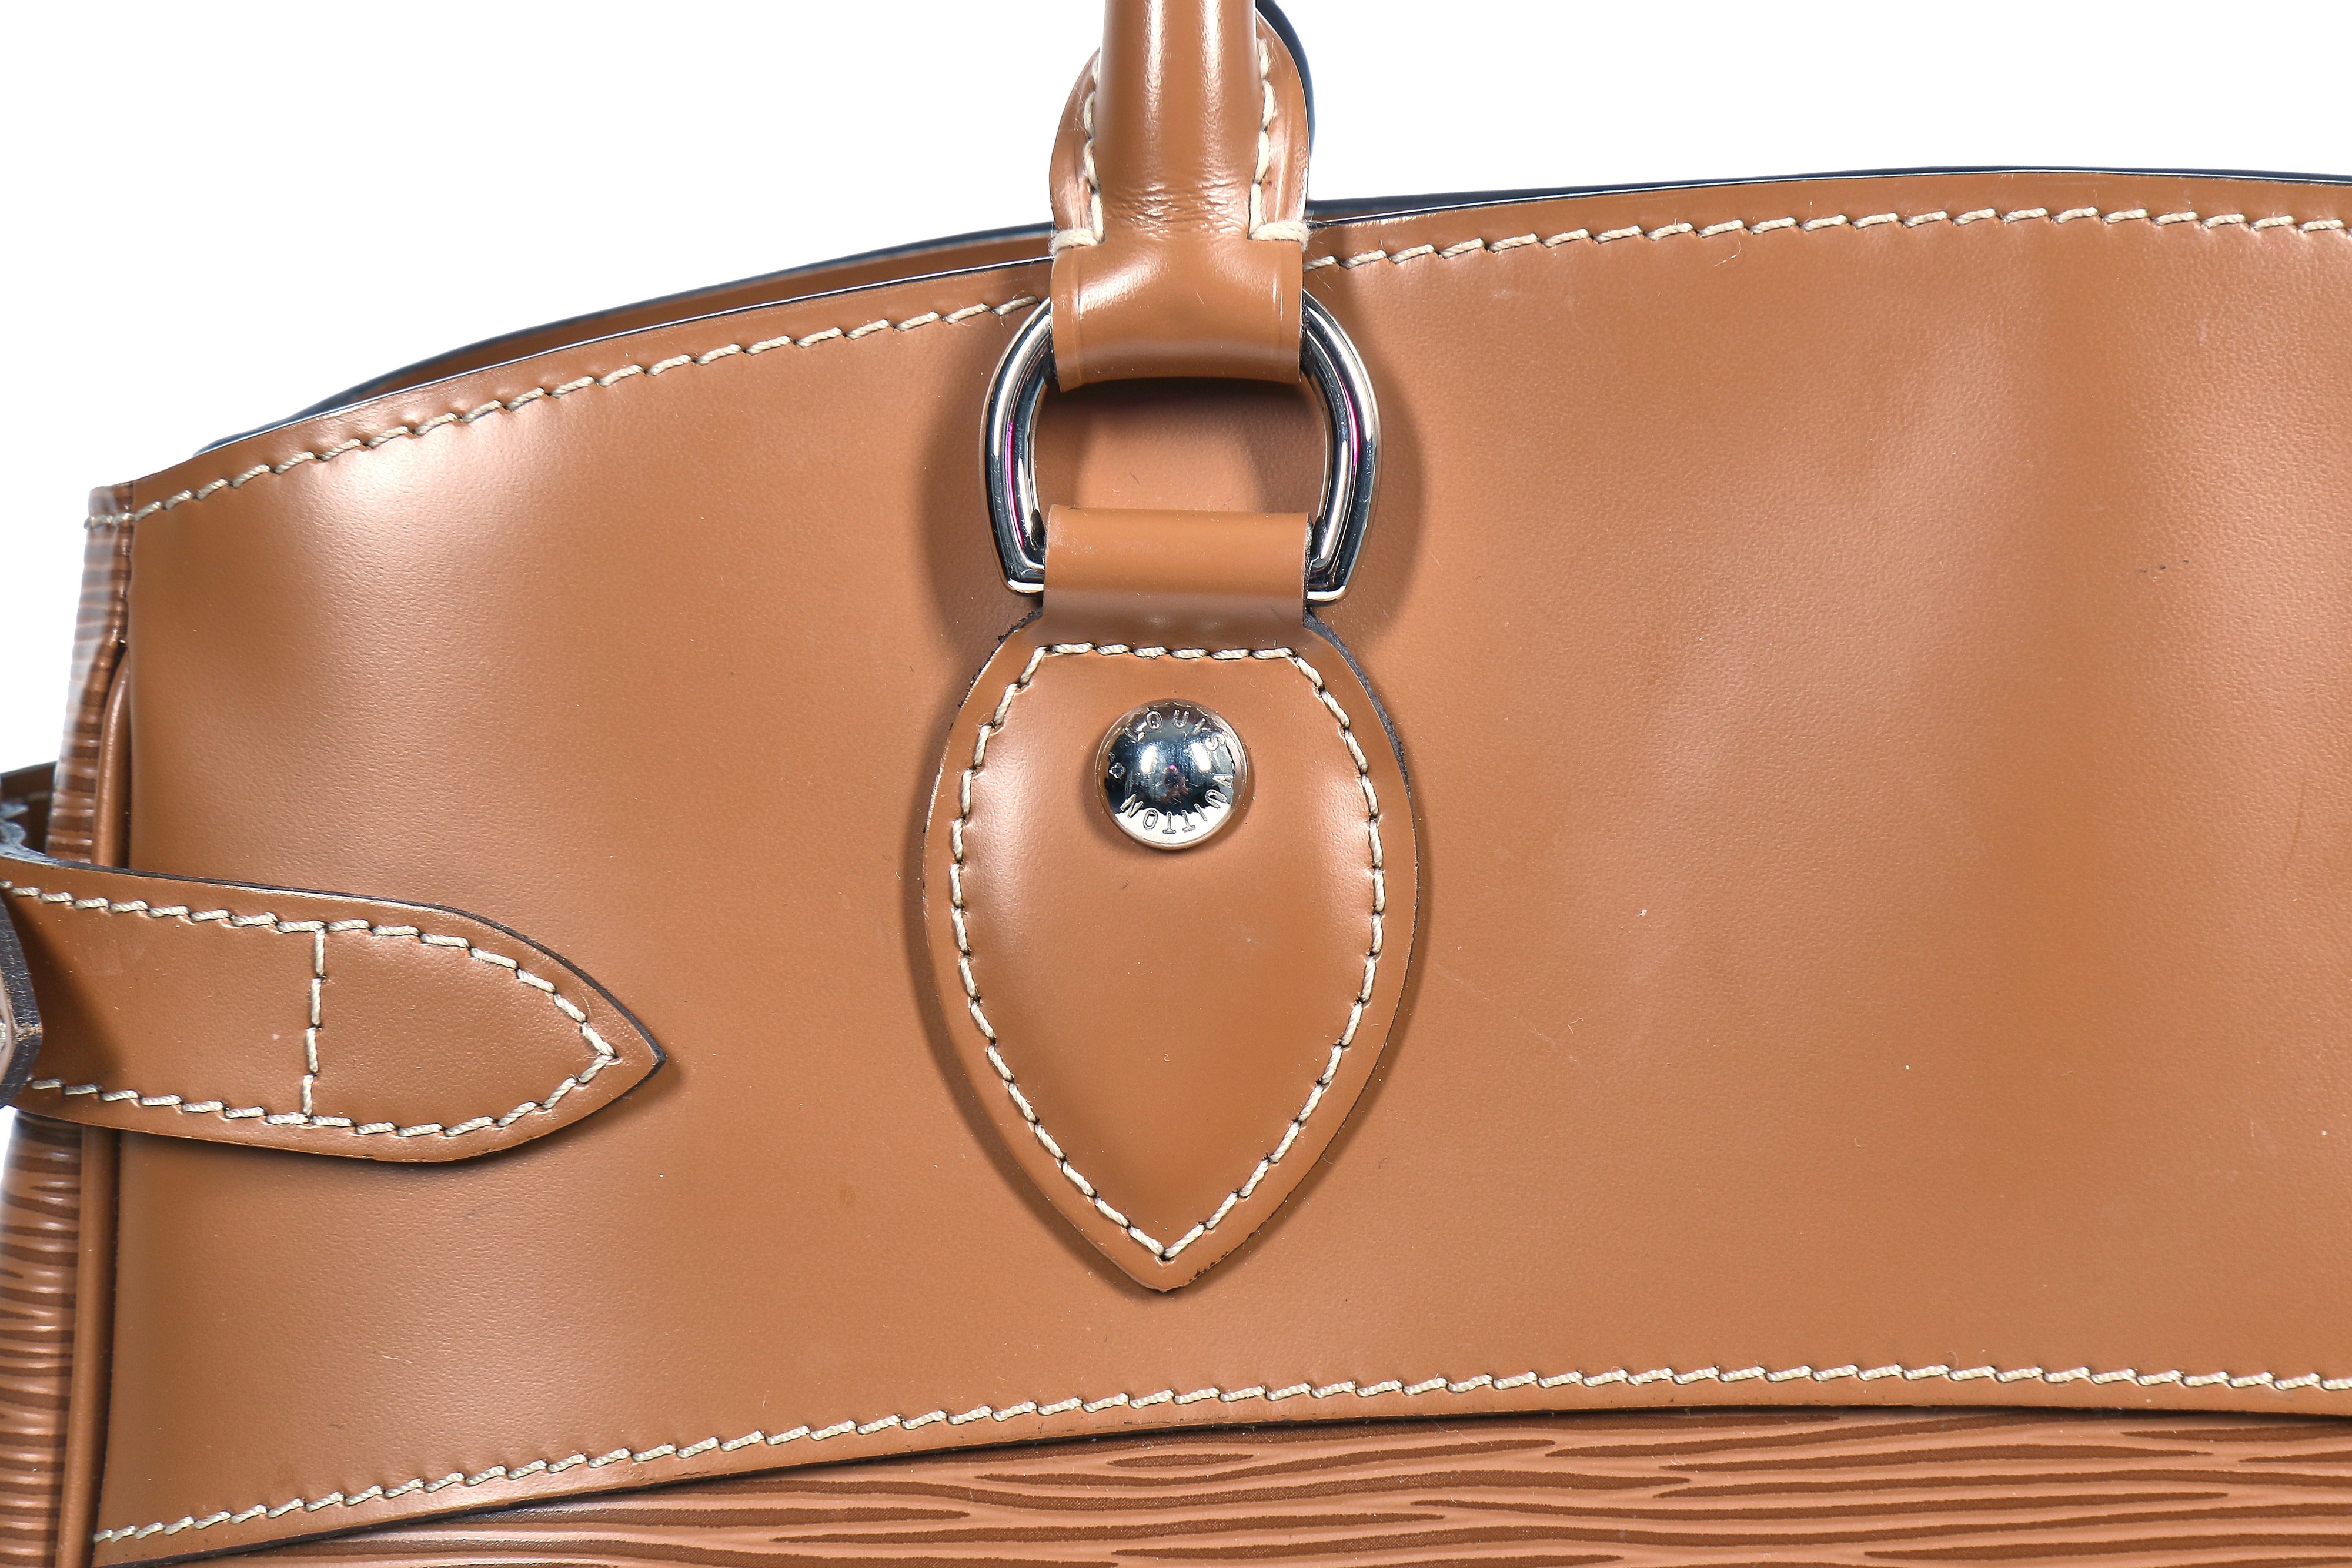 Lot 45 - A Louis Vuitton tan Epi leather handbag